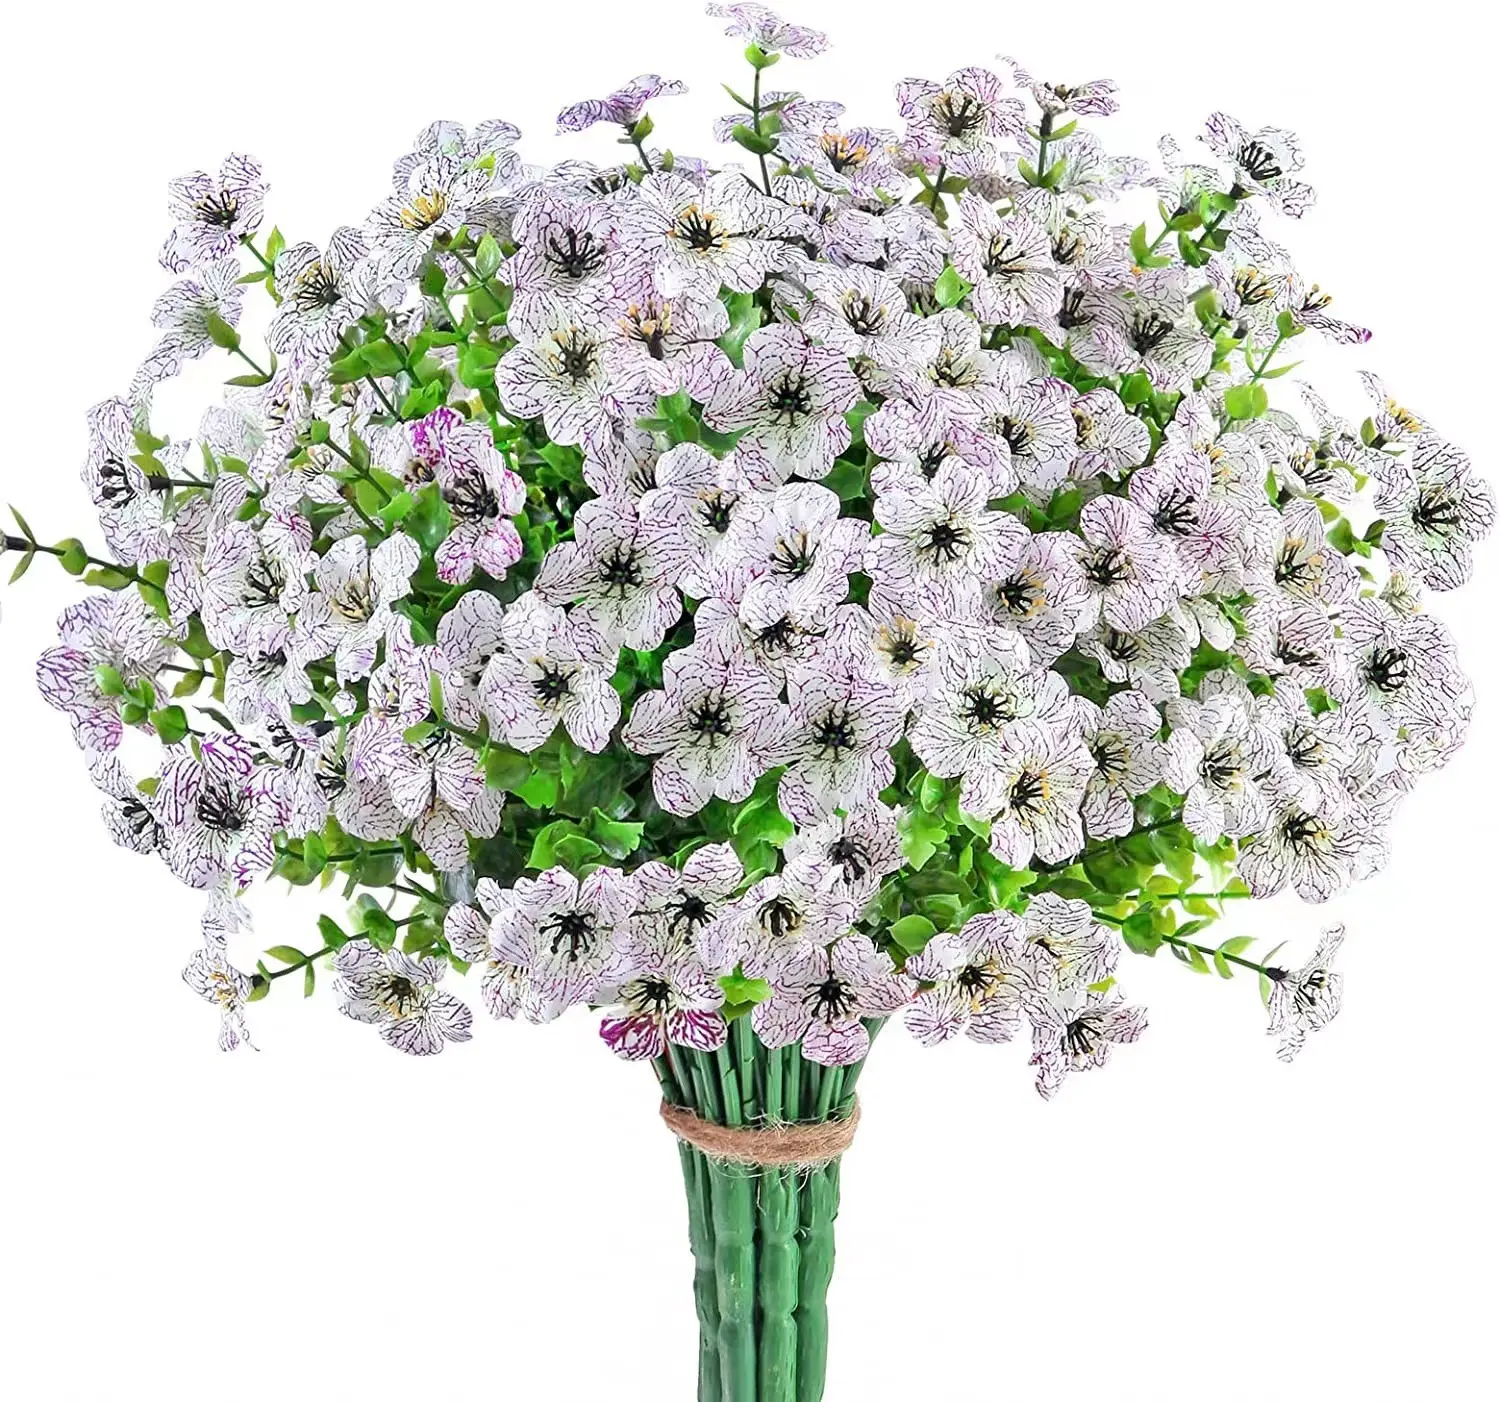 ดอกไม้ประดิษฐ์กลางแจ้งขายส่ง 7 ส้อมดอกยูคาลิปตัสสีม่วงช่อดอกไม้ตกแต่งบ้านประดิษฐ์พืชใบยูคาลิปตัส